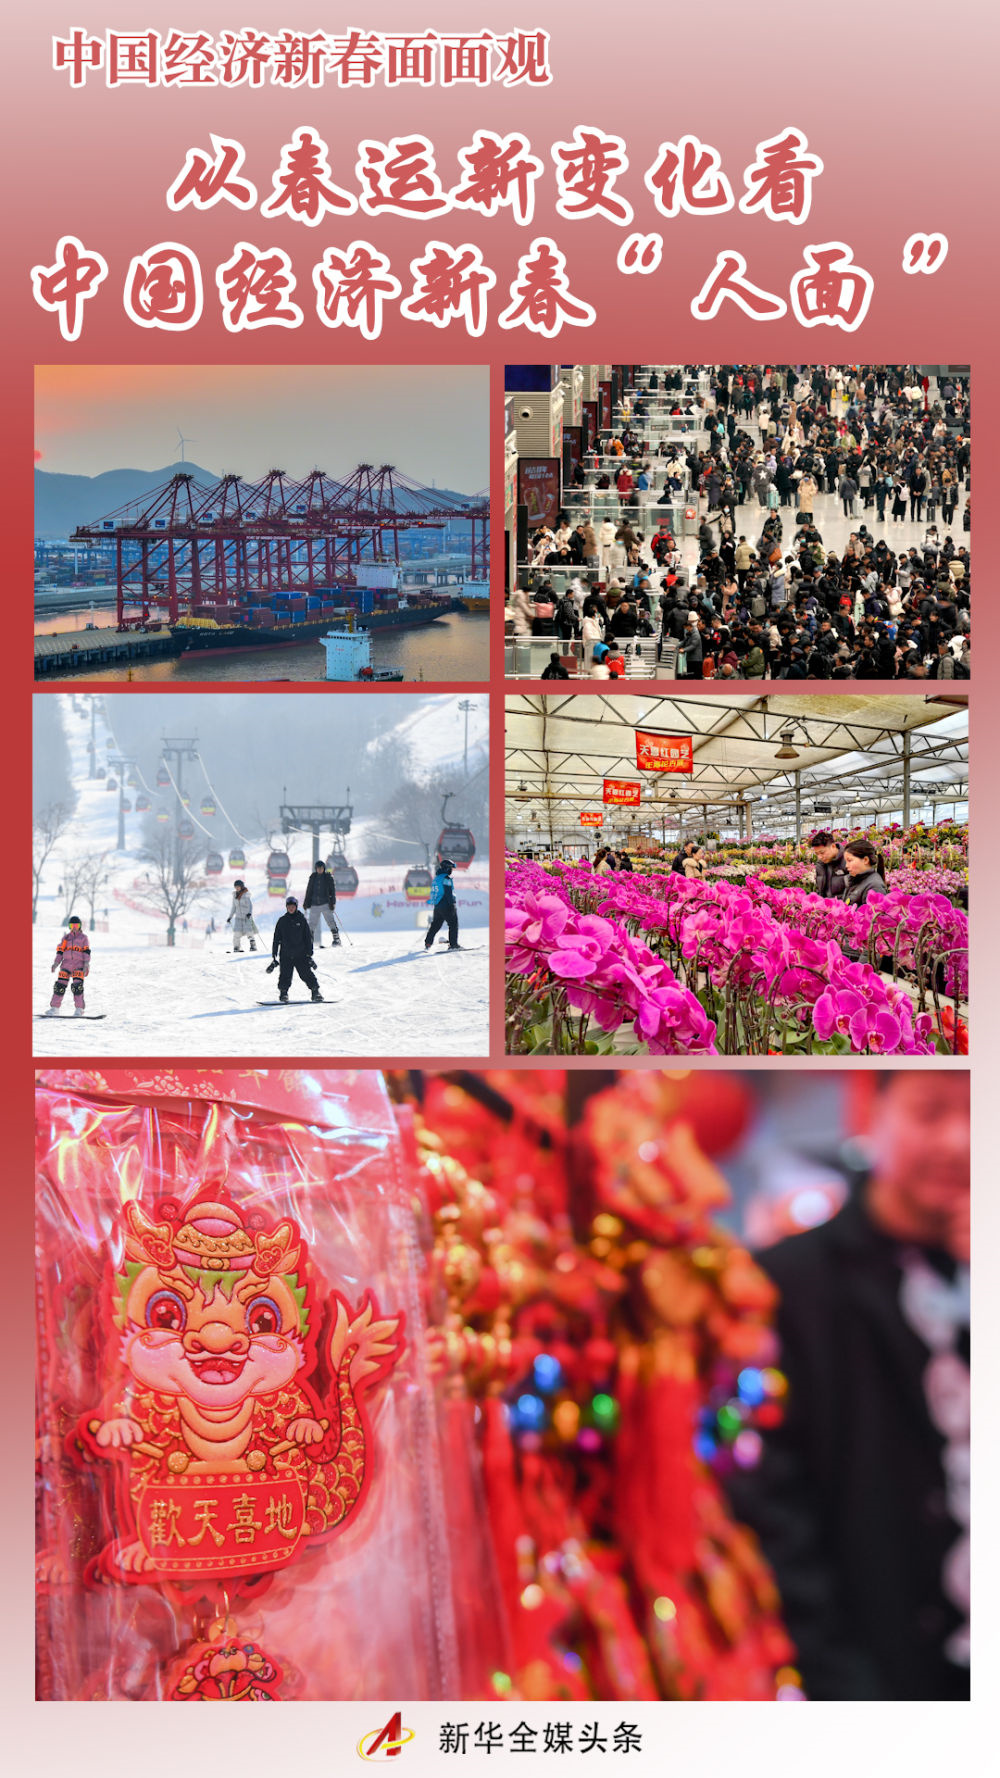 從春運新變化看中國經濟新春“人面”